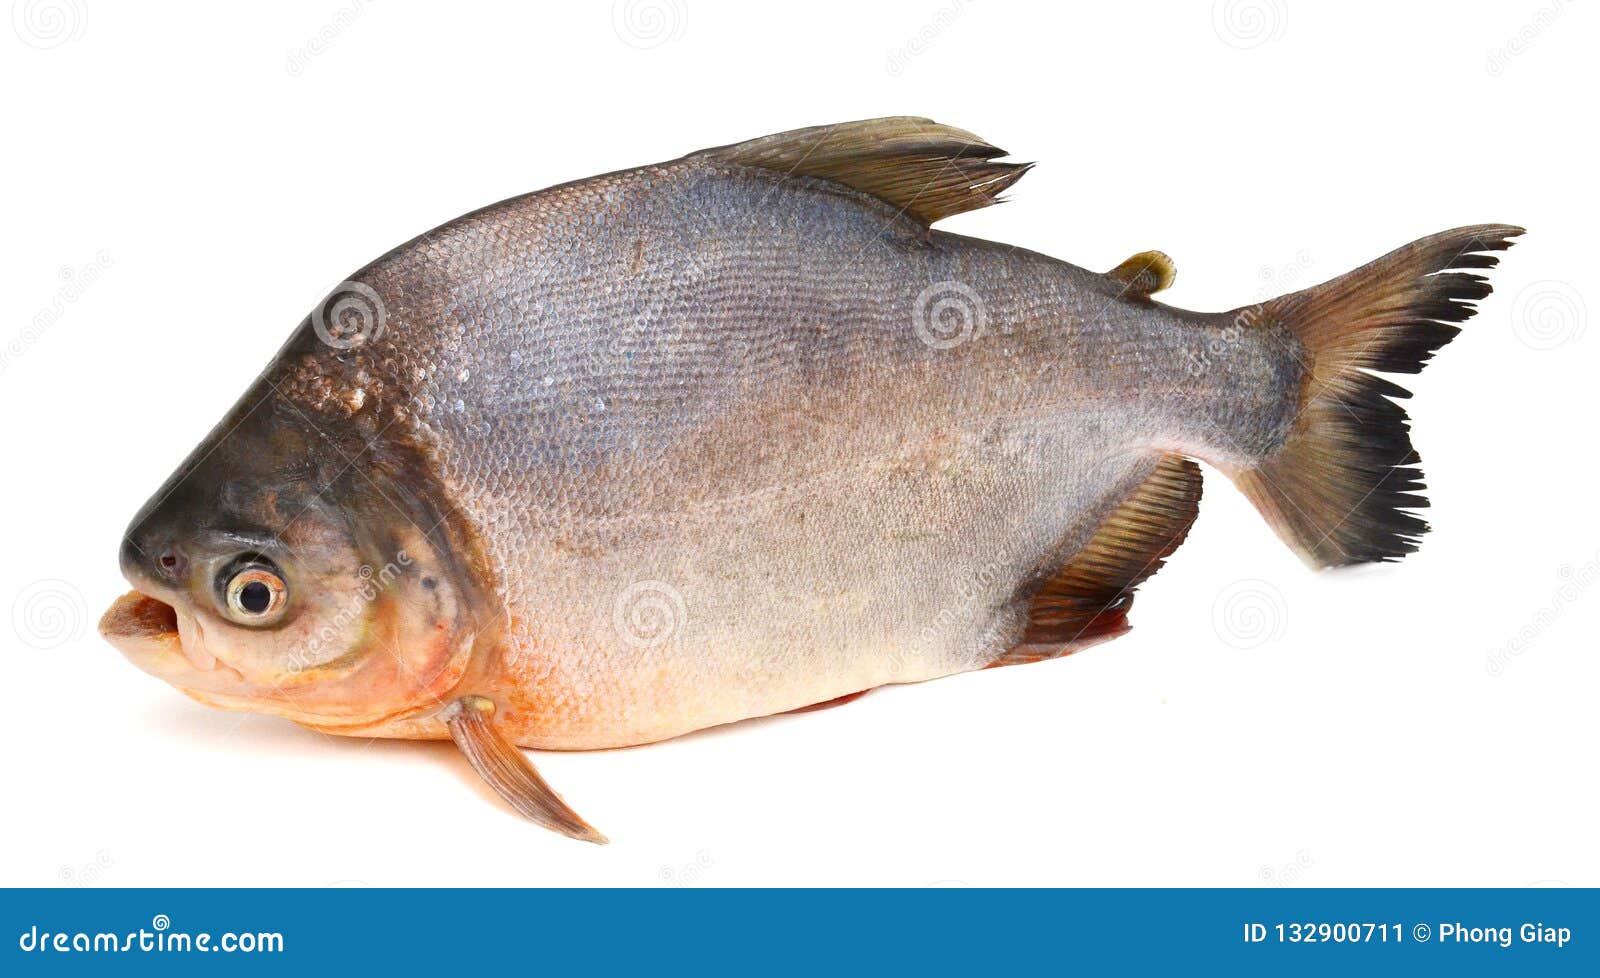 tambaqui pacu fish. live, peru.